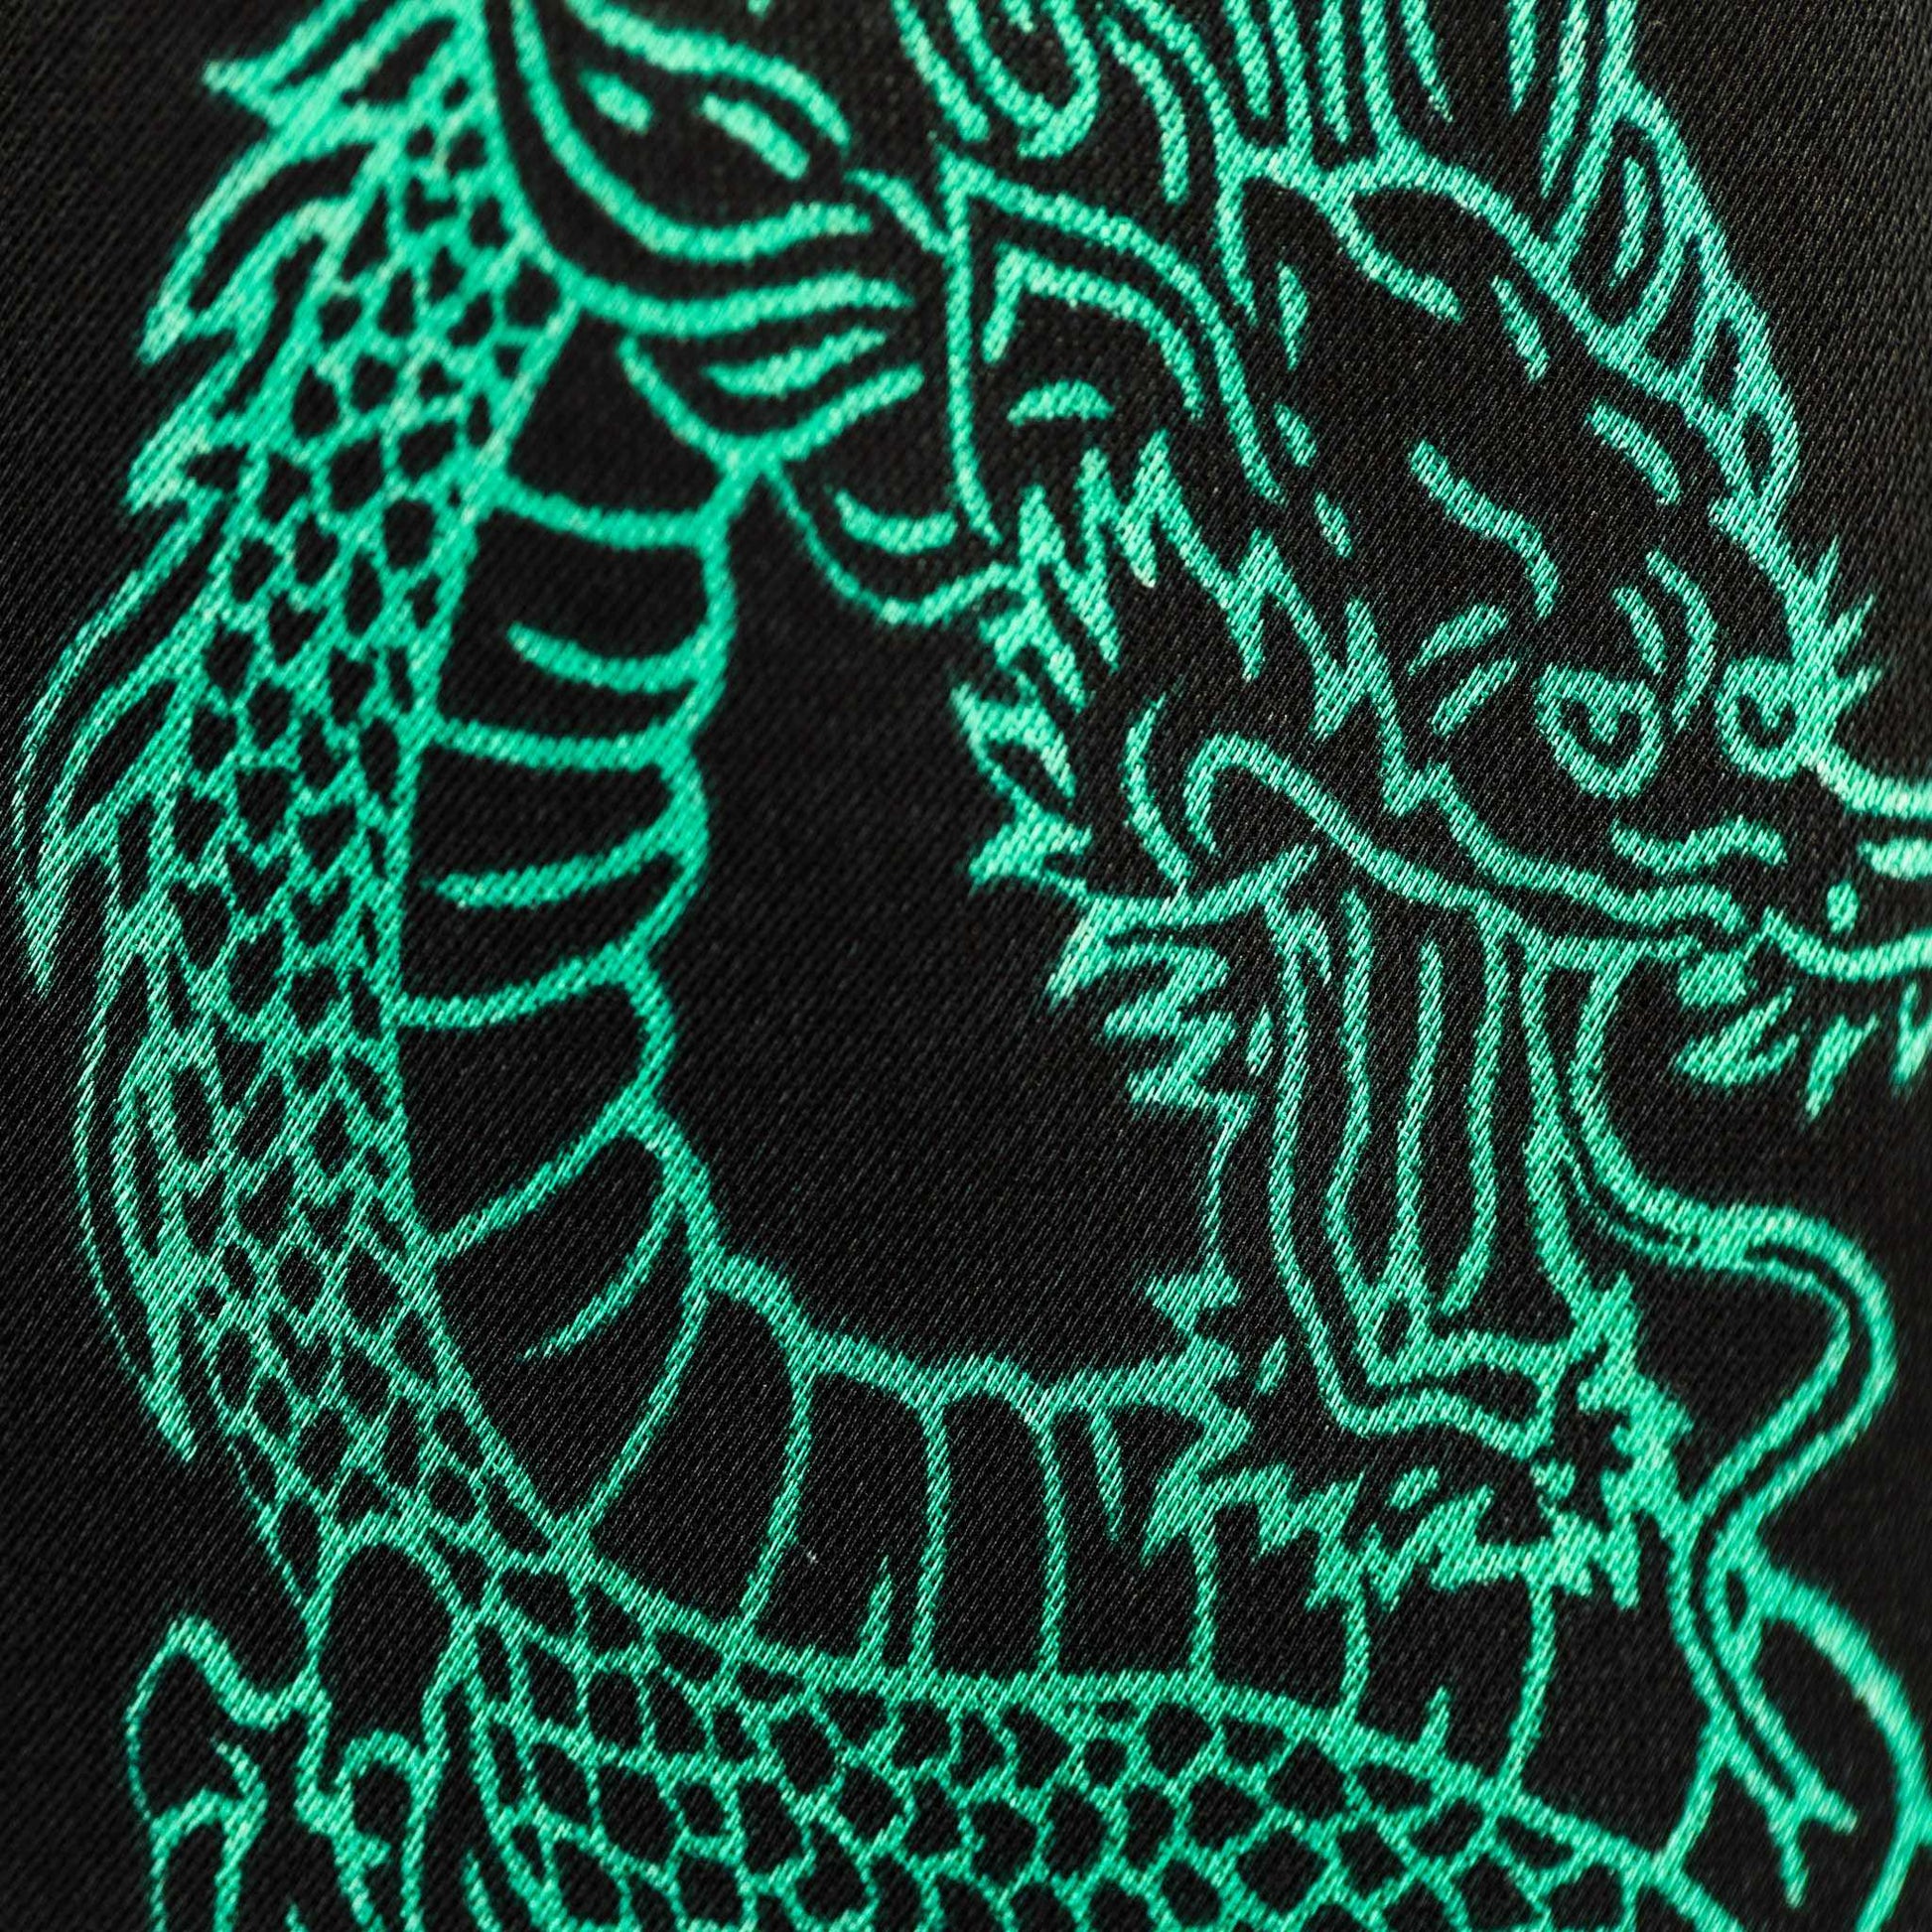 Eșarfă damă din satin, imprimeu cu dragon chinezesc, 55 x 55 cm - Negru, Verde 